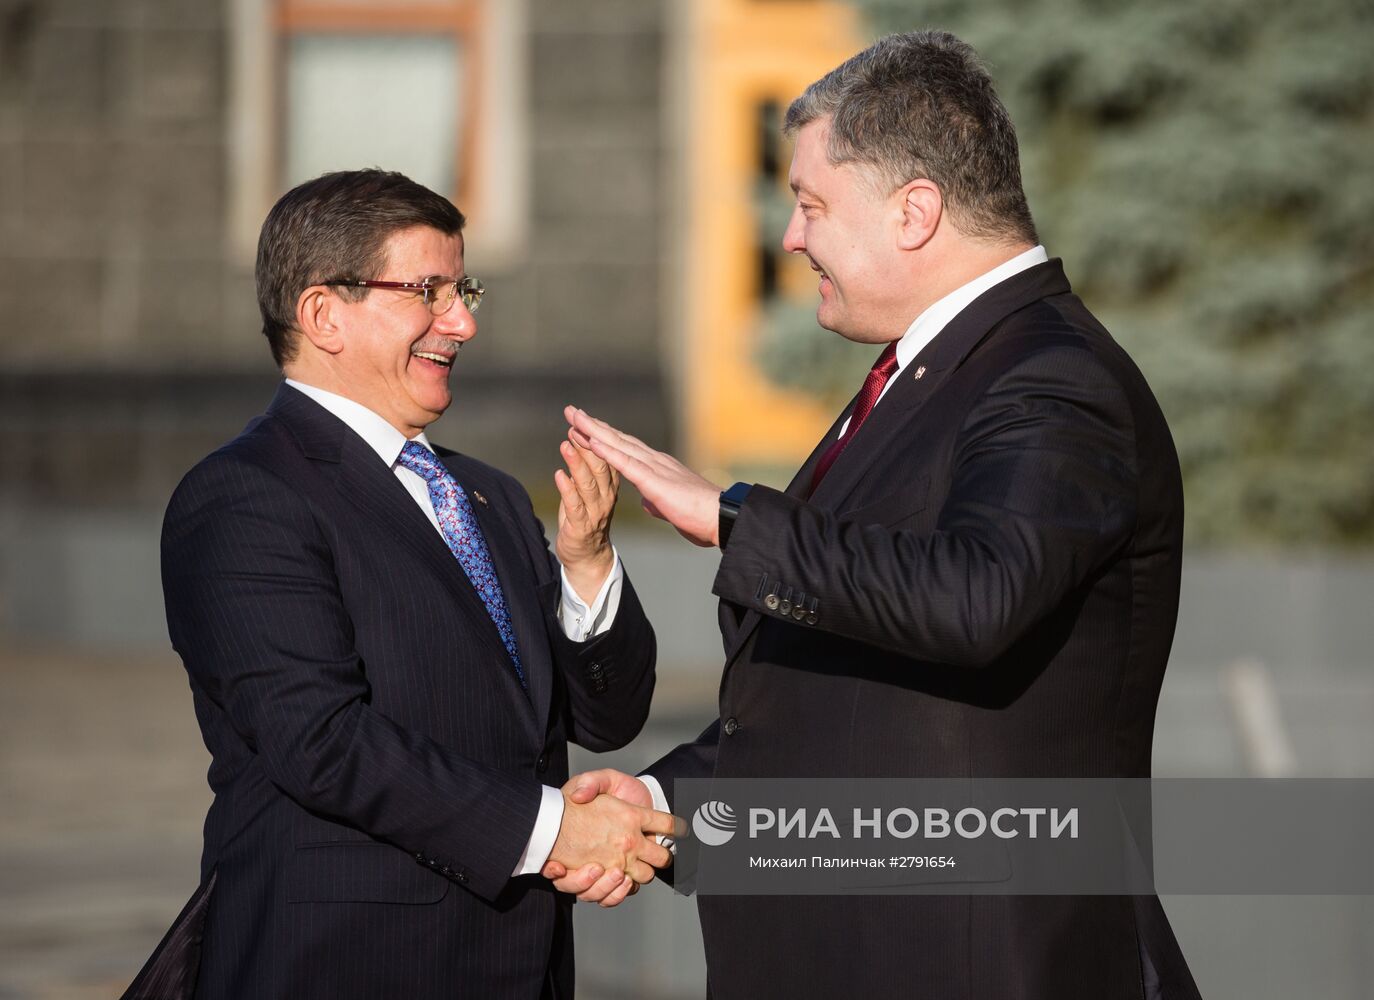 Встреча президента Украины П. Порошенко и премьер-министра Турции А. Давутоглу